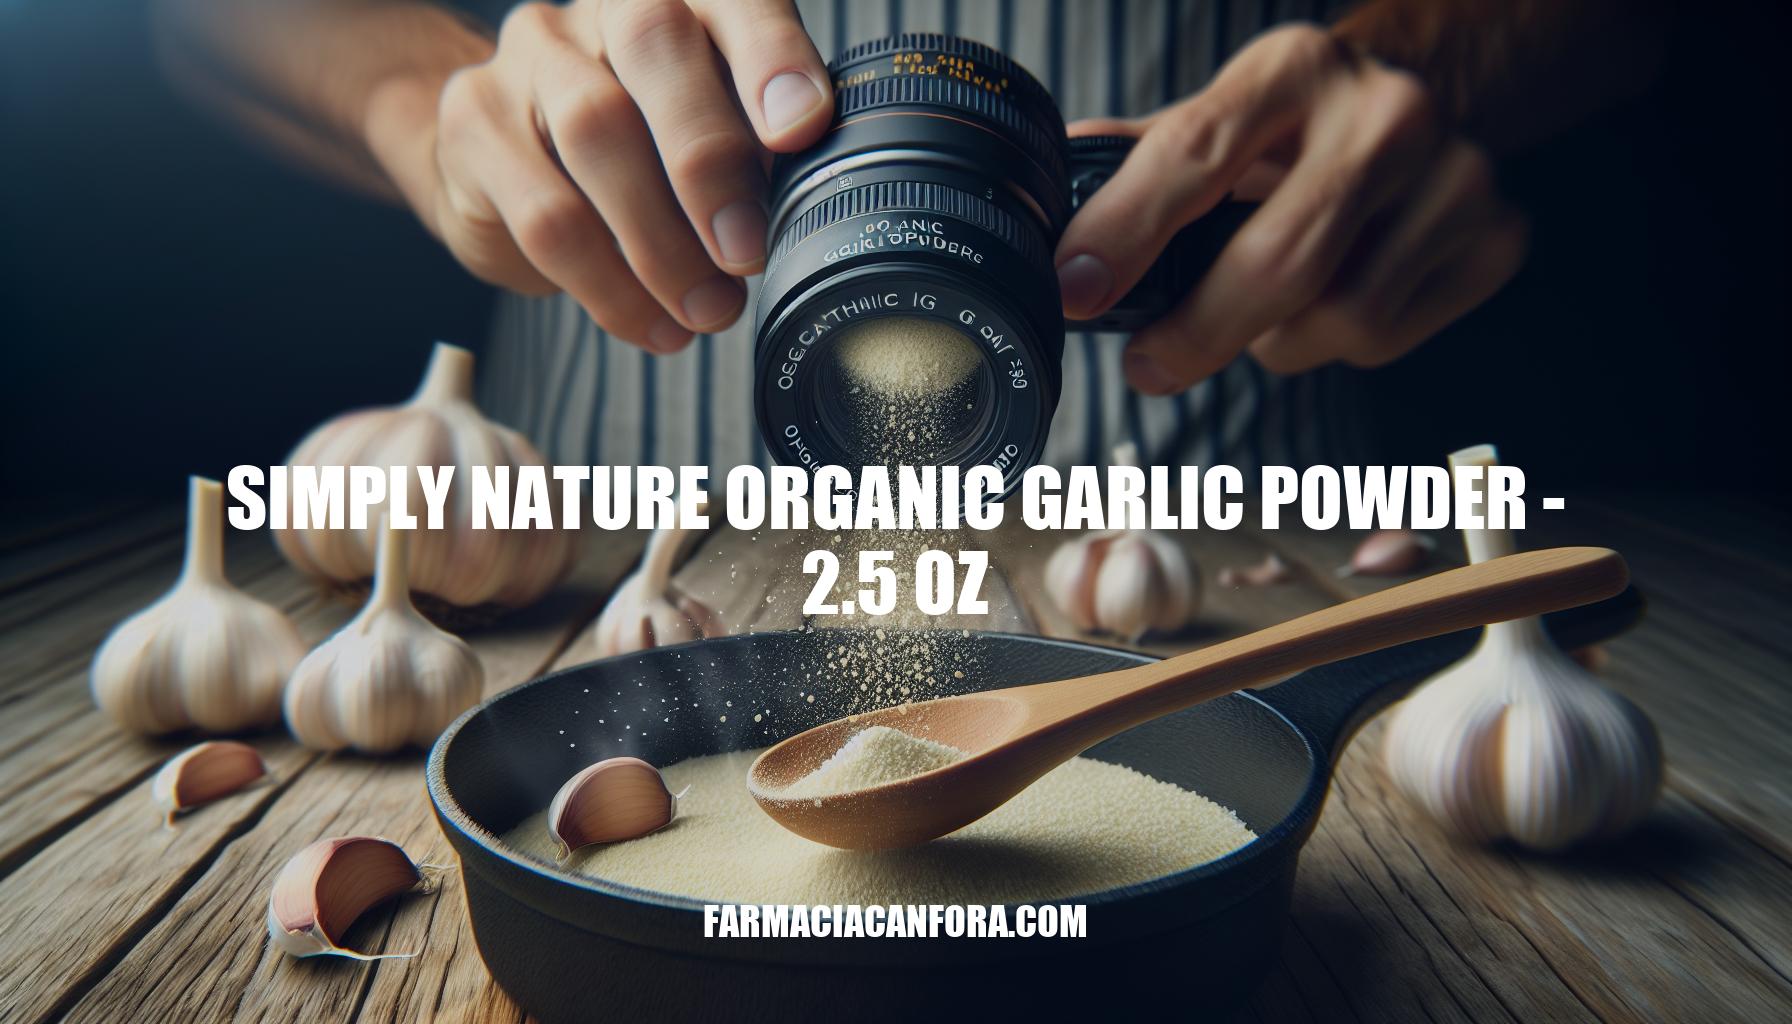 Discover Simply Nature Organic Garlic Powder - 2.5 oz: A Culinary Essential